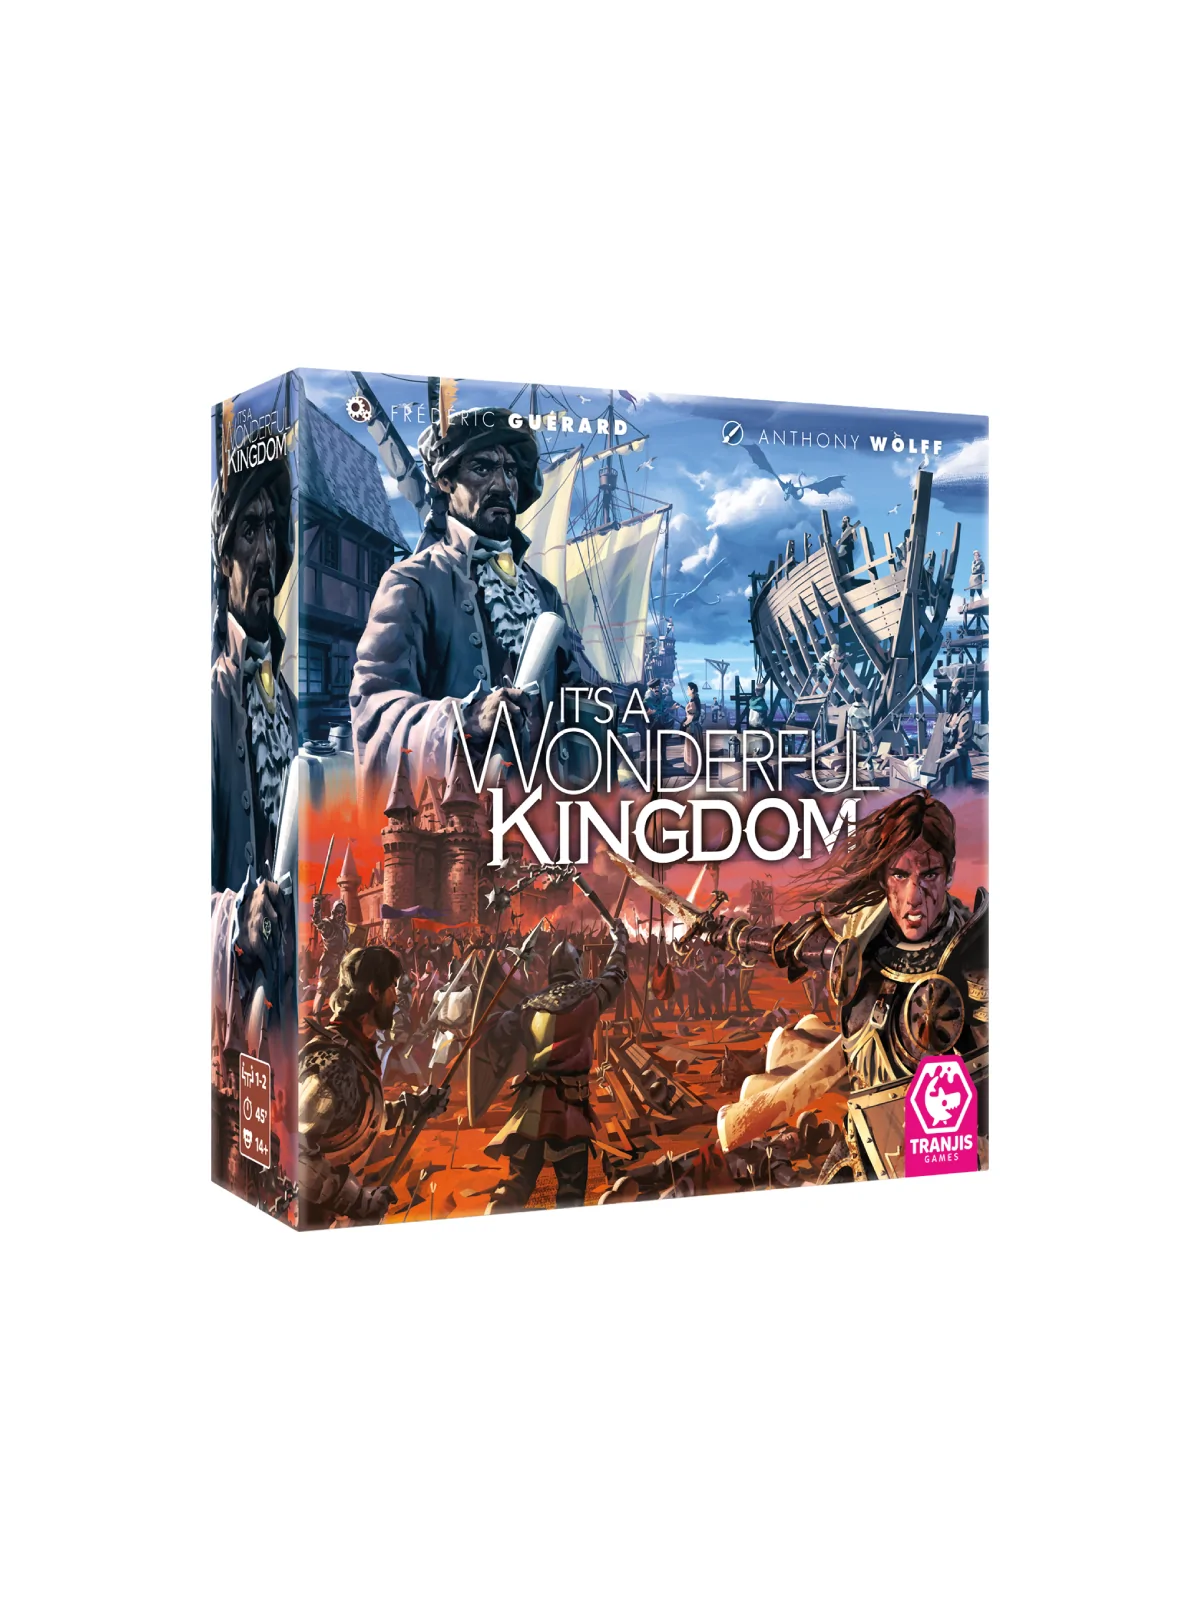 Comprar It’s a Wonderful Kingdom barato al mejor precio 33,16 € de Tra